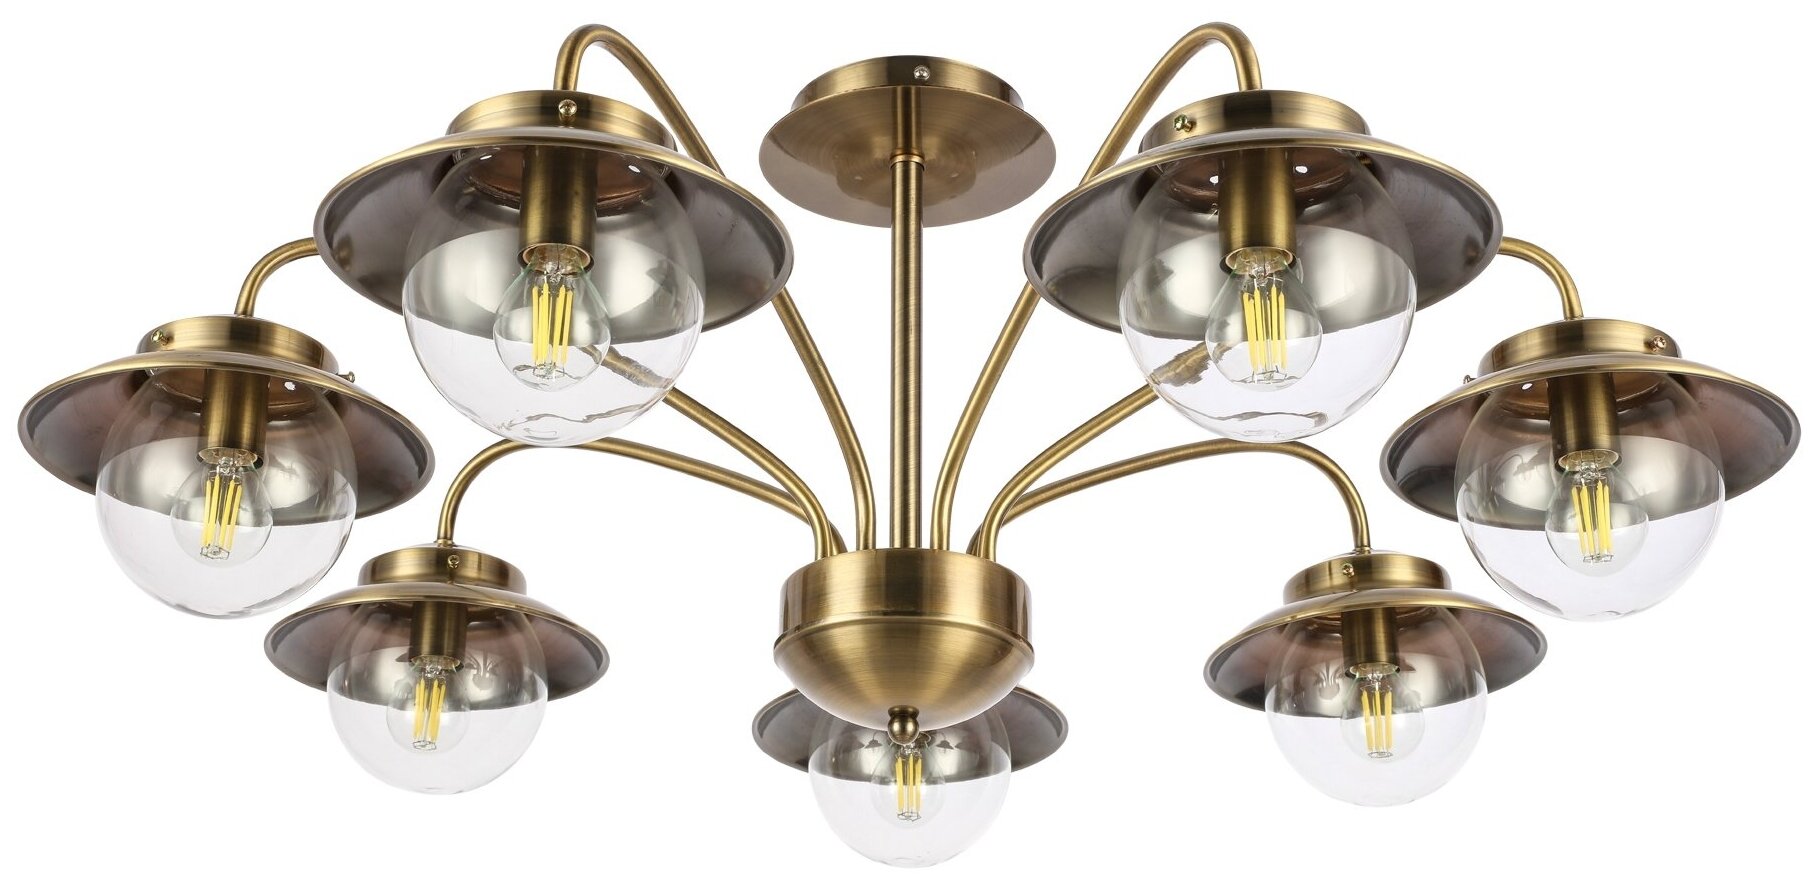 Люстра Evoluce Garonni SLE110102, E14, 280 Вт, кол-во ламп: 7 шт., цвет: бронзовый